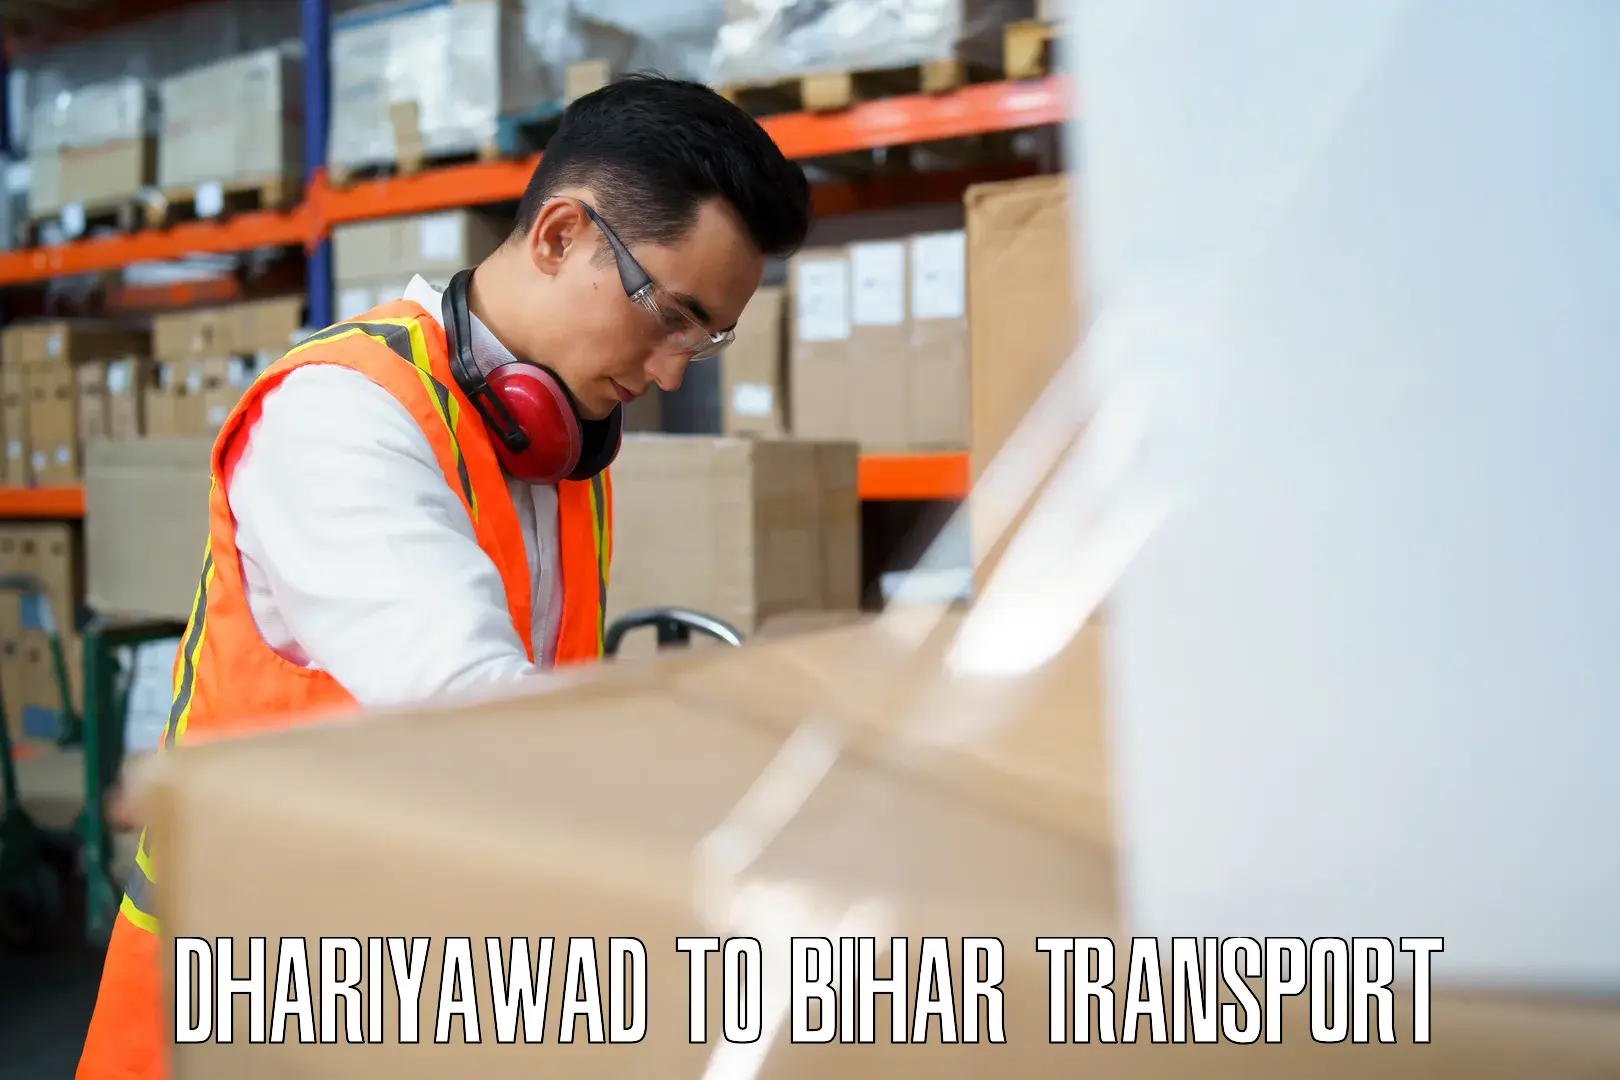 Bike shipping service Dhariyawad to Biraul